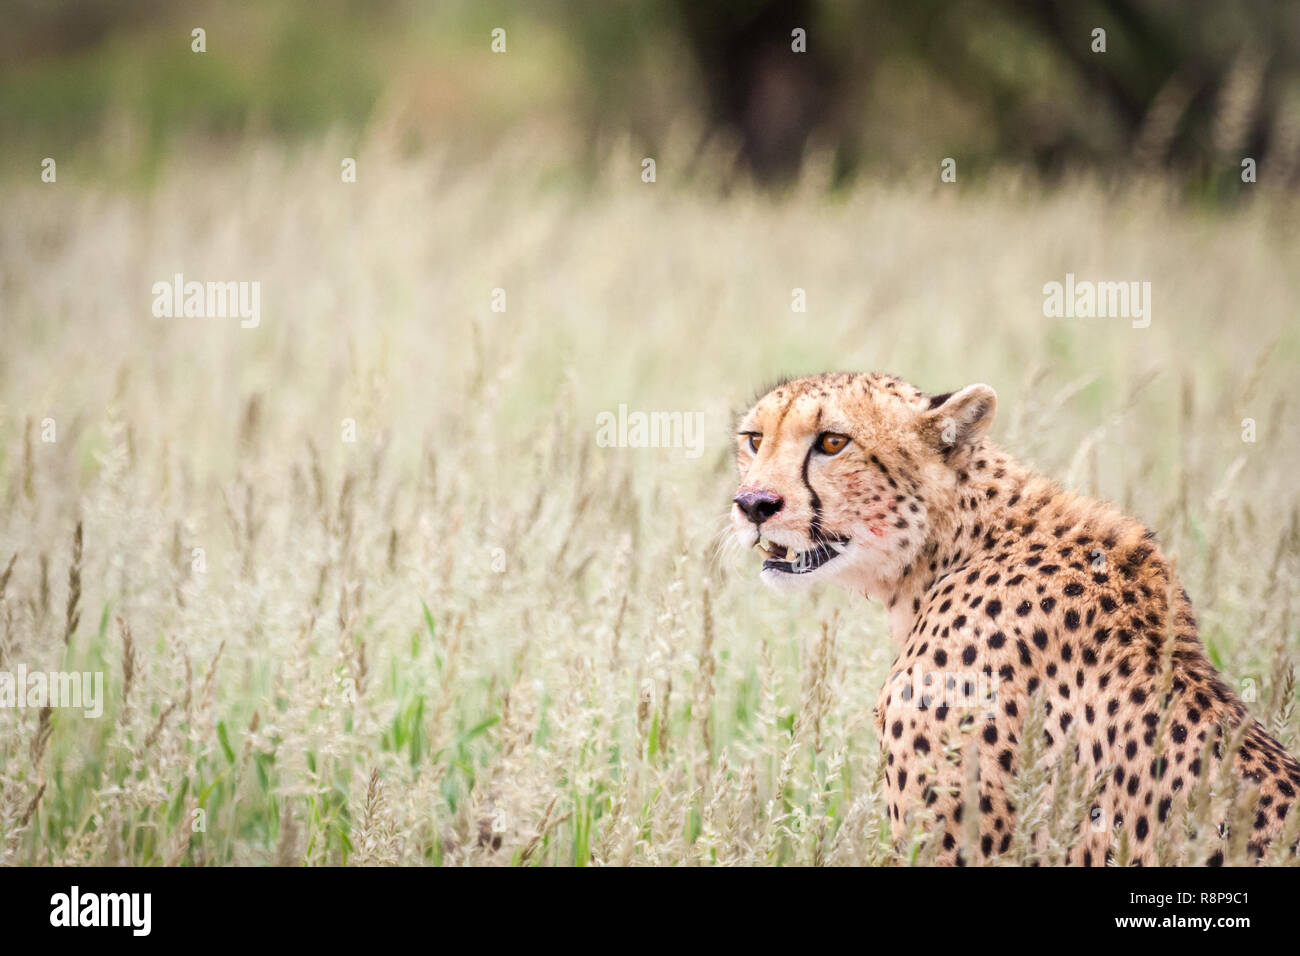 Portrait de guépard dans GRASS. Banque D'Images